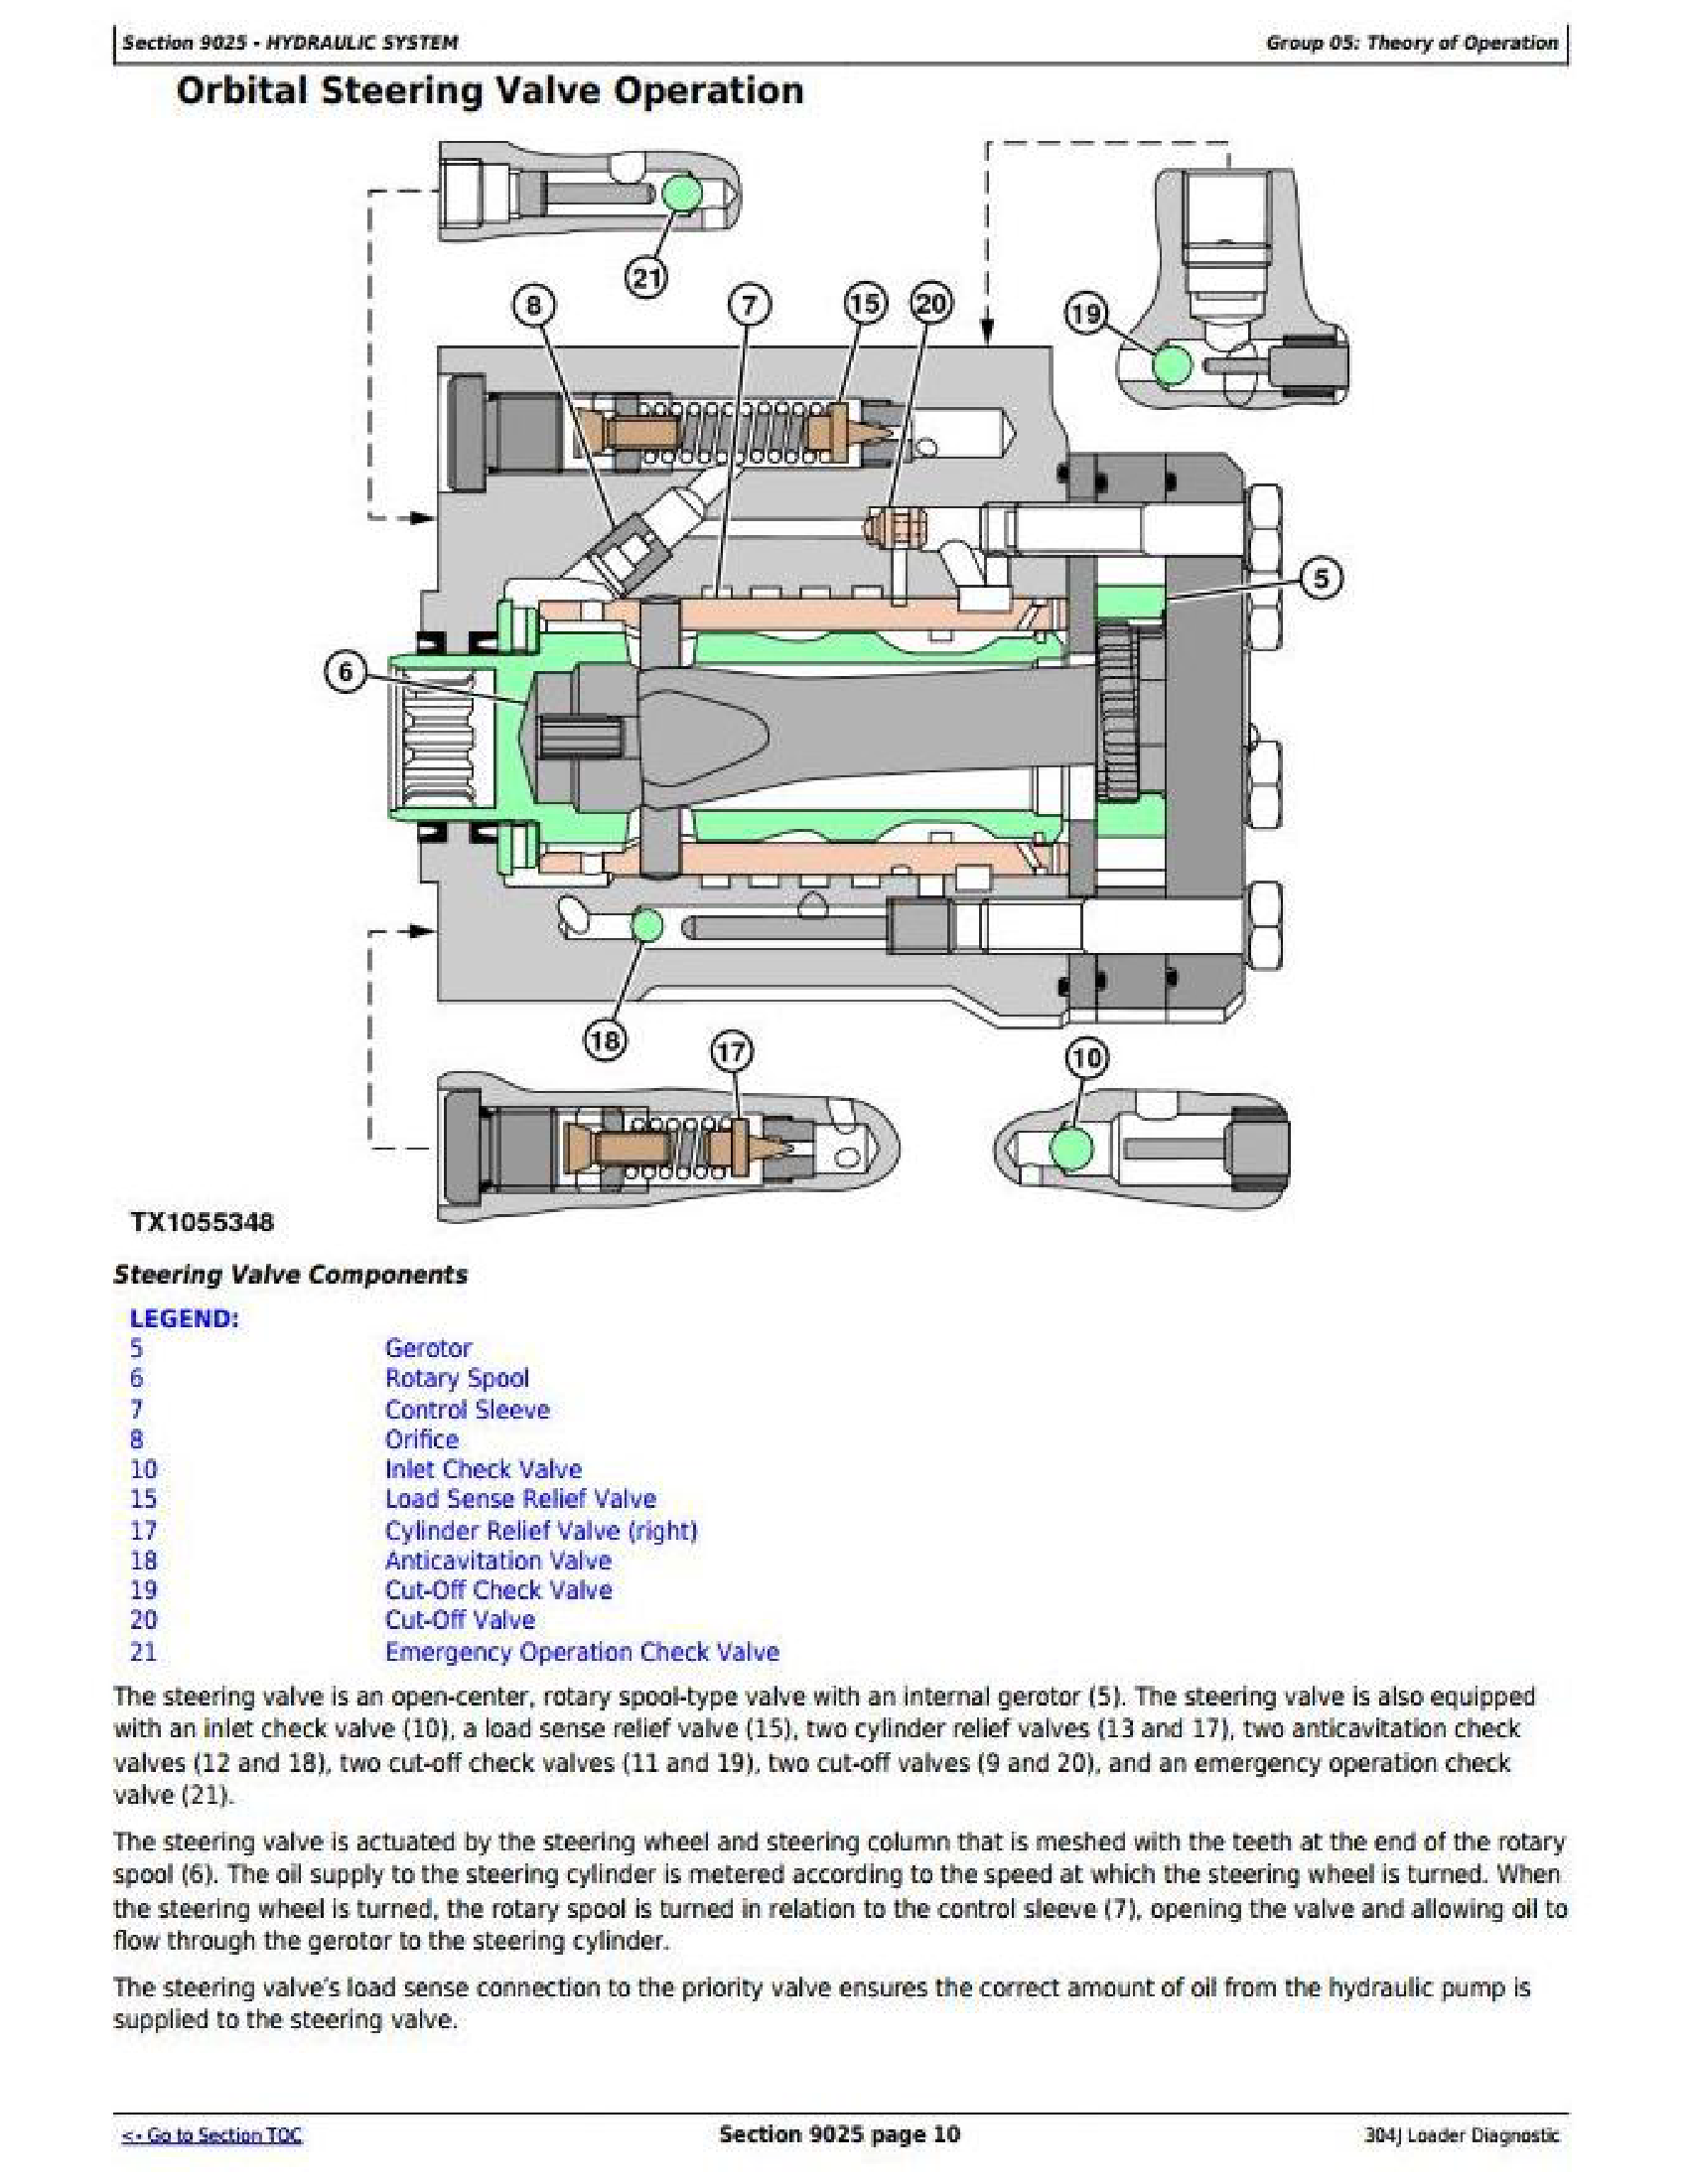 John Deere 569 manual pdf